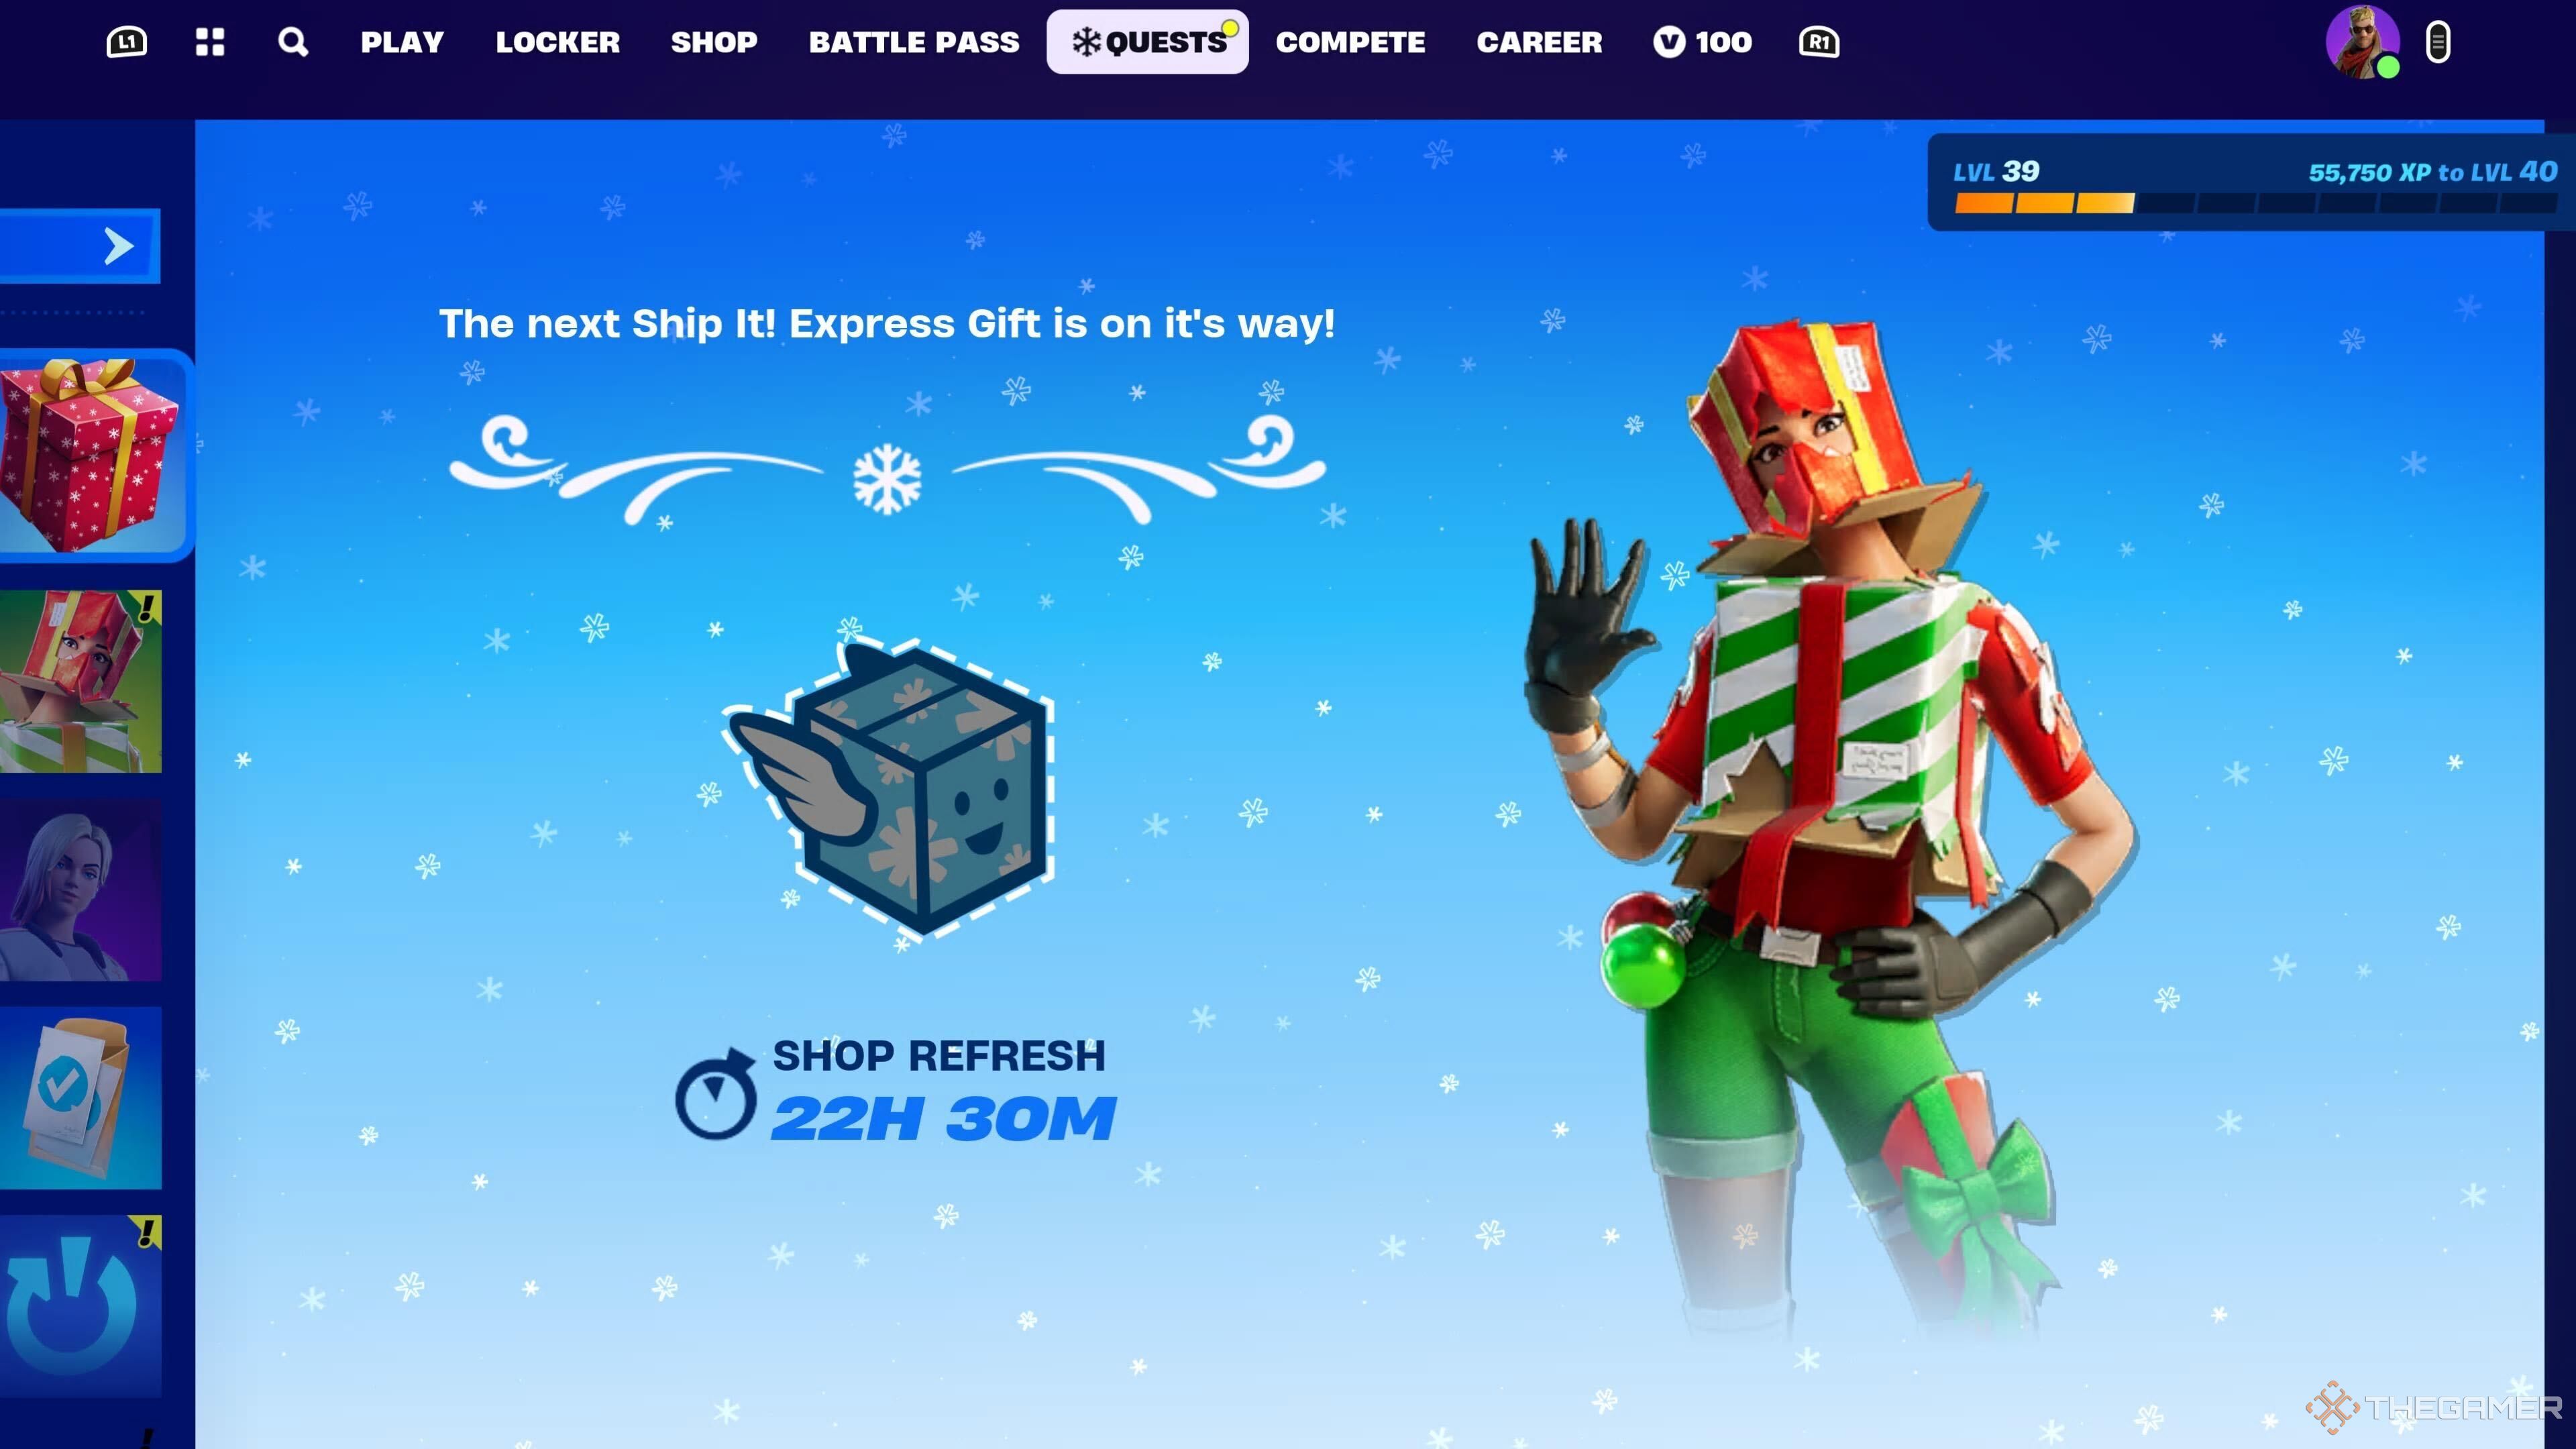 Fortnite gift card online | Buy a code from 1000 V-Bucks | Mobiletopup.co.uk